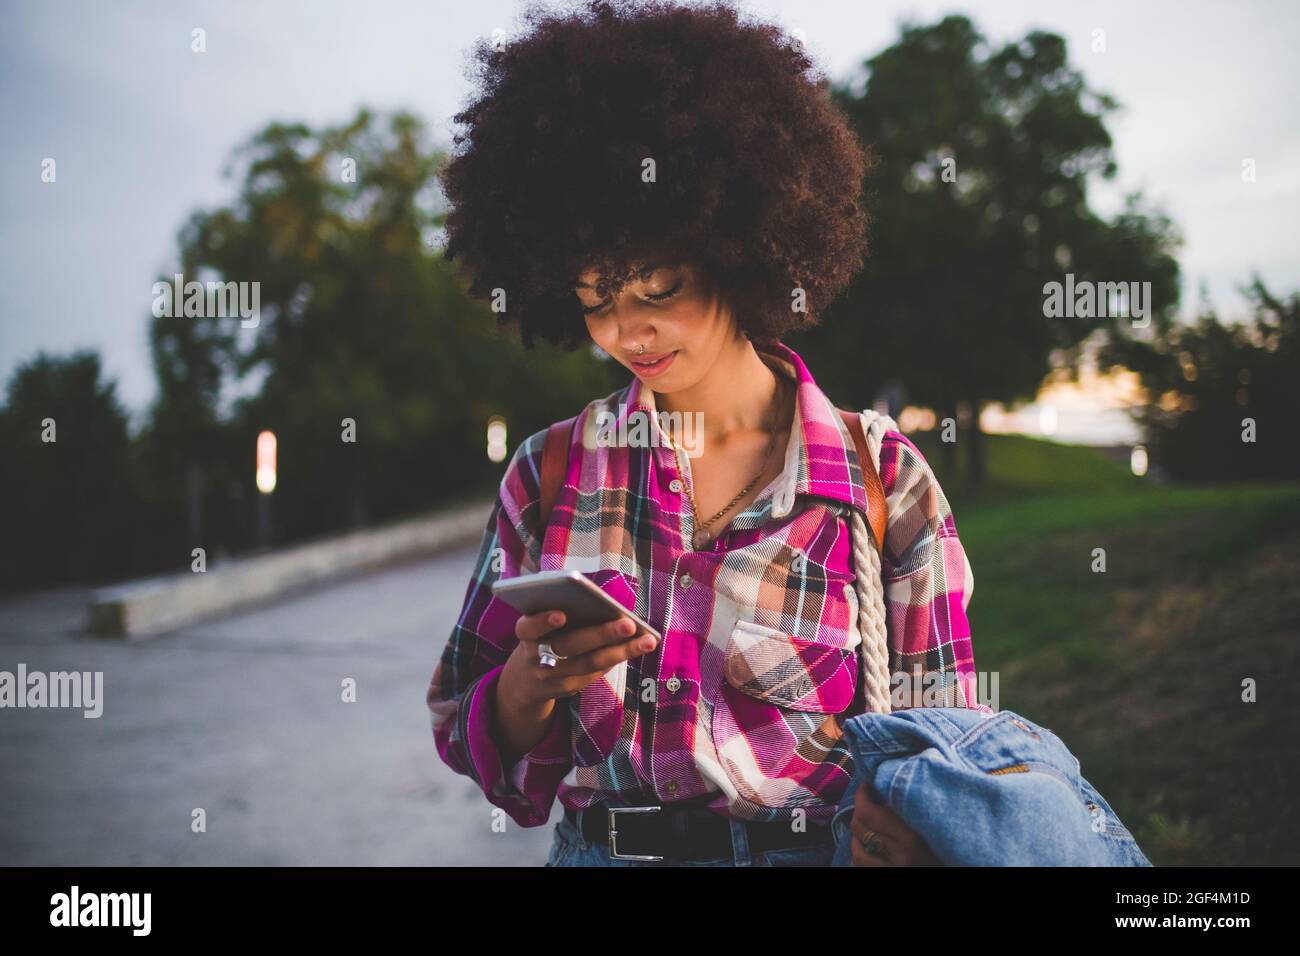 Junge Frau mit Afro-Frisur mit Smartphone im Freien in der Dämmerung Stockfoto